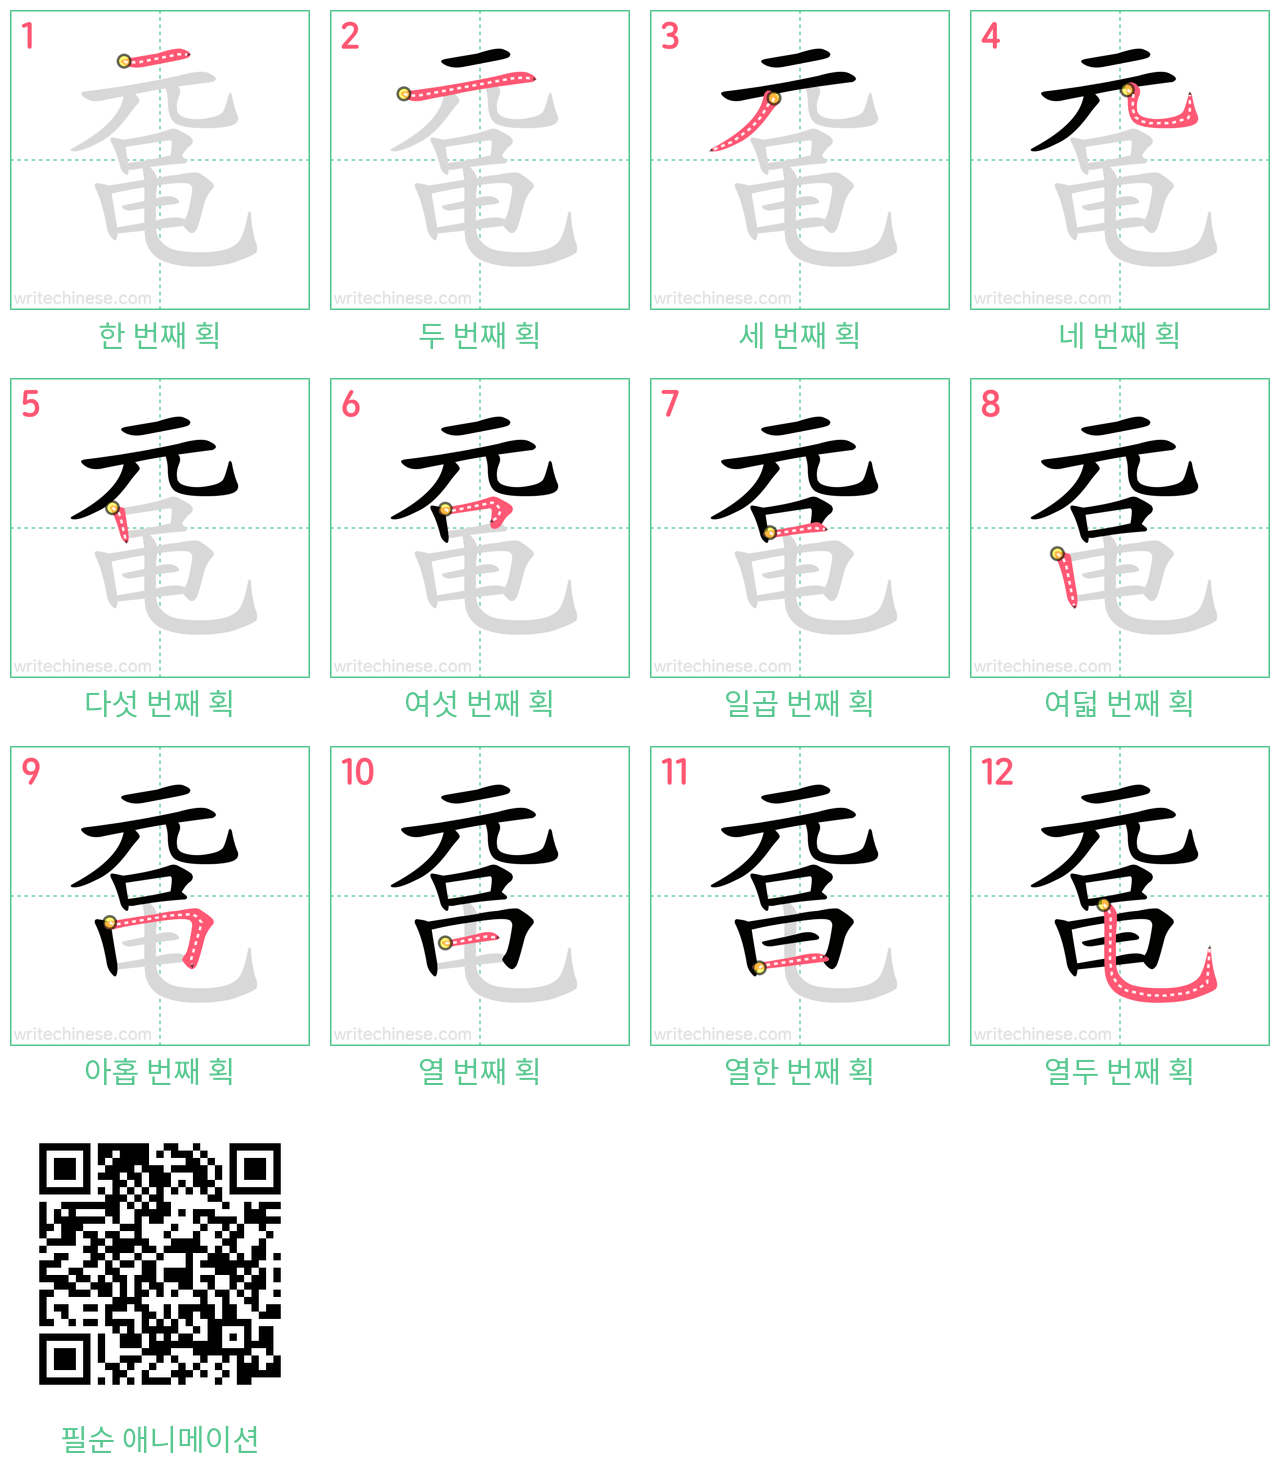 鼋 step-by-step stroke order diagrams